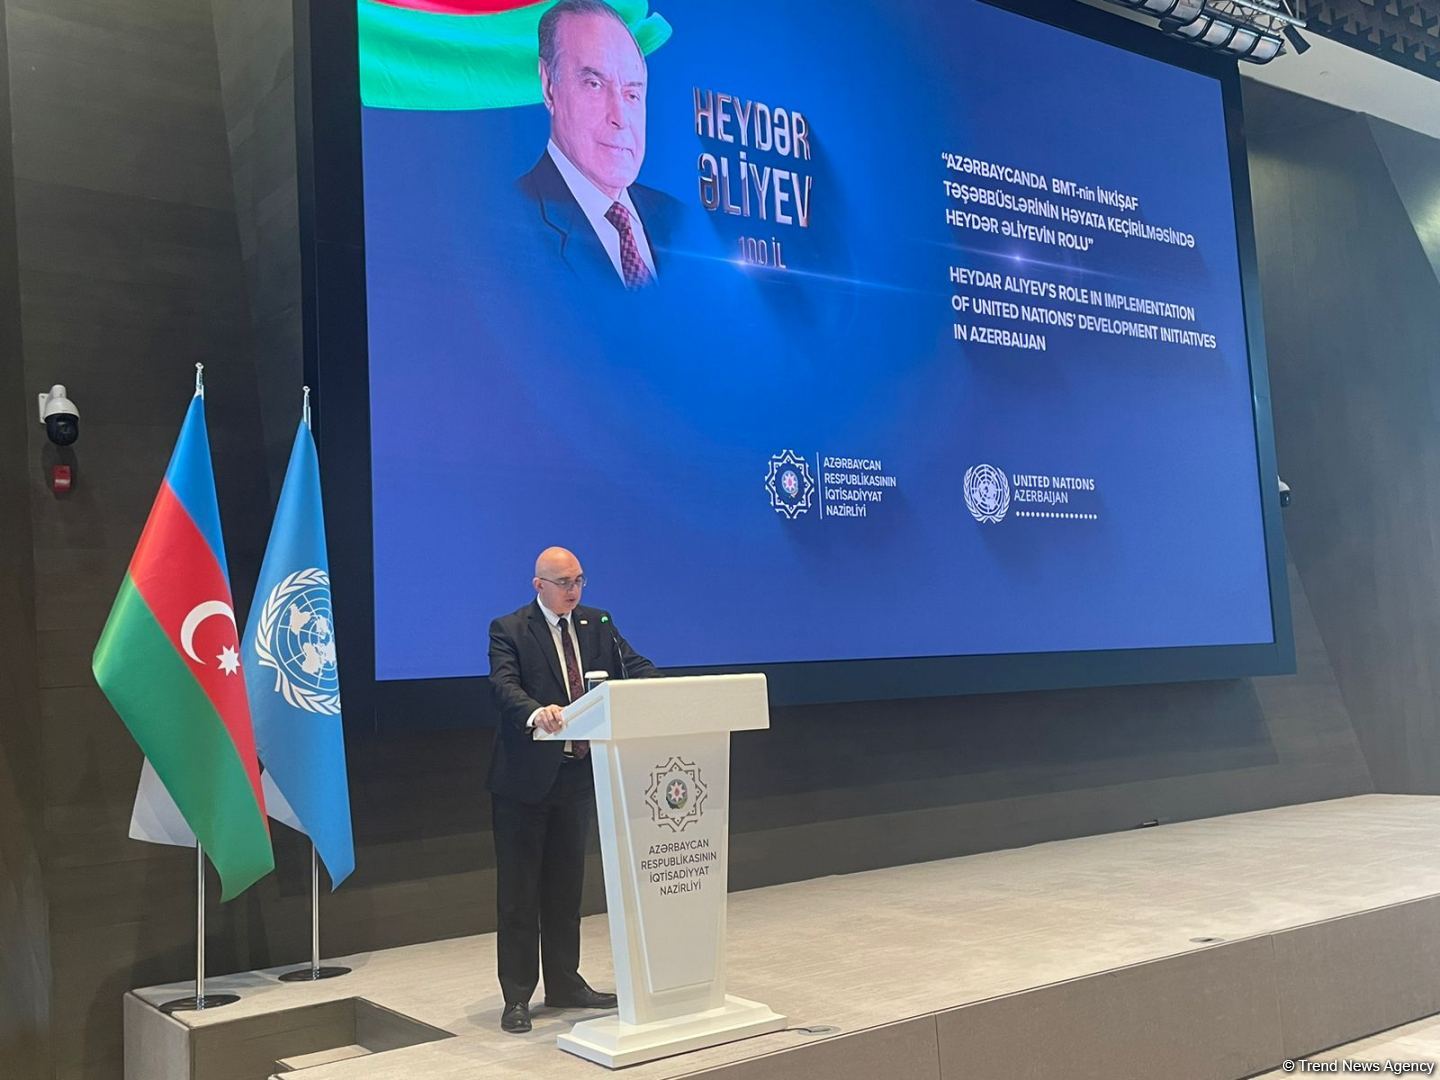 При Гейдаре Алиеве в Азербайджане были определены важные направления деятельности в реализации инициатив ООН - Фарид Бабаев